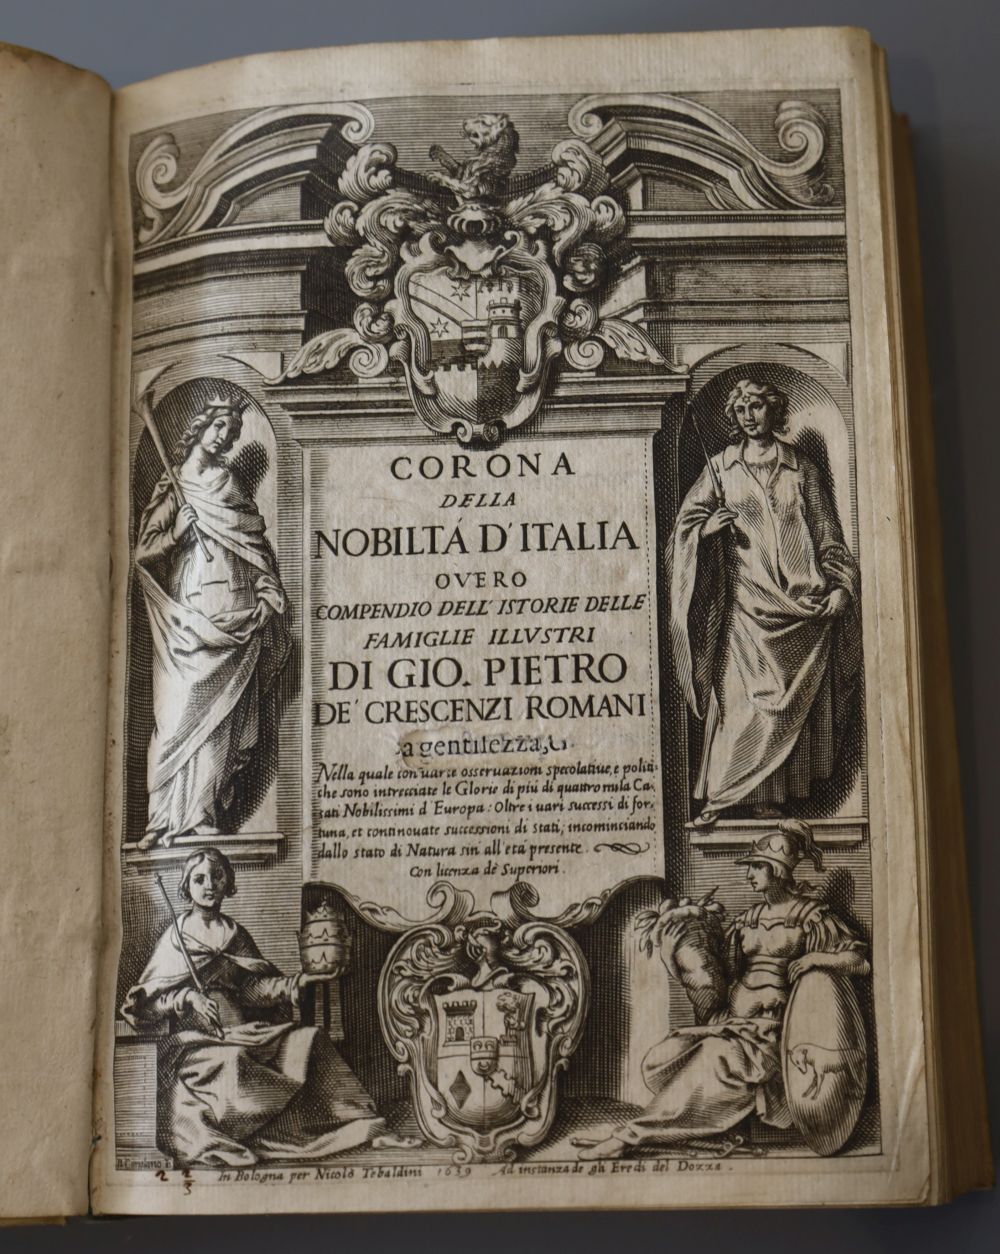 Crescenzi Romani, Giovanni Pietro de - Corona della nobilta ditalia, vol 1 (of 2) 8vo, vellum, hole in title page, Bolgona, 1639